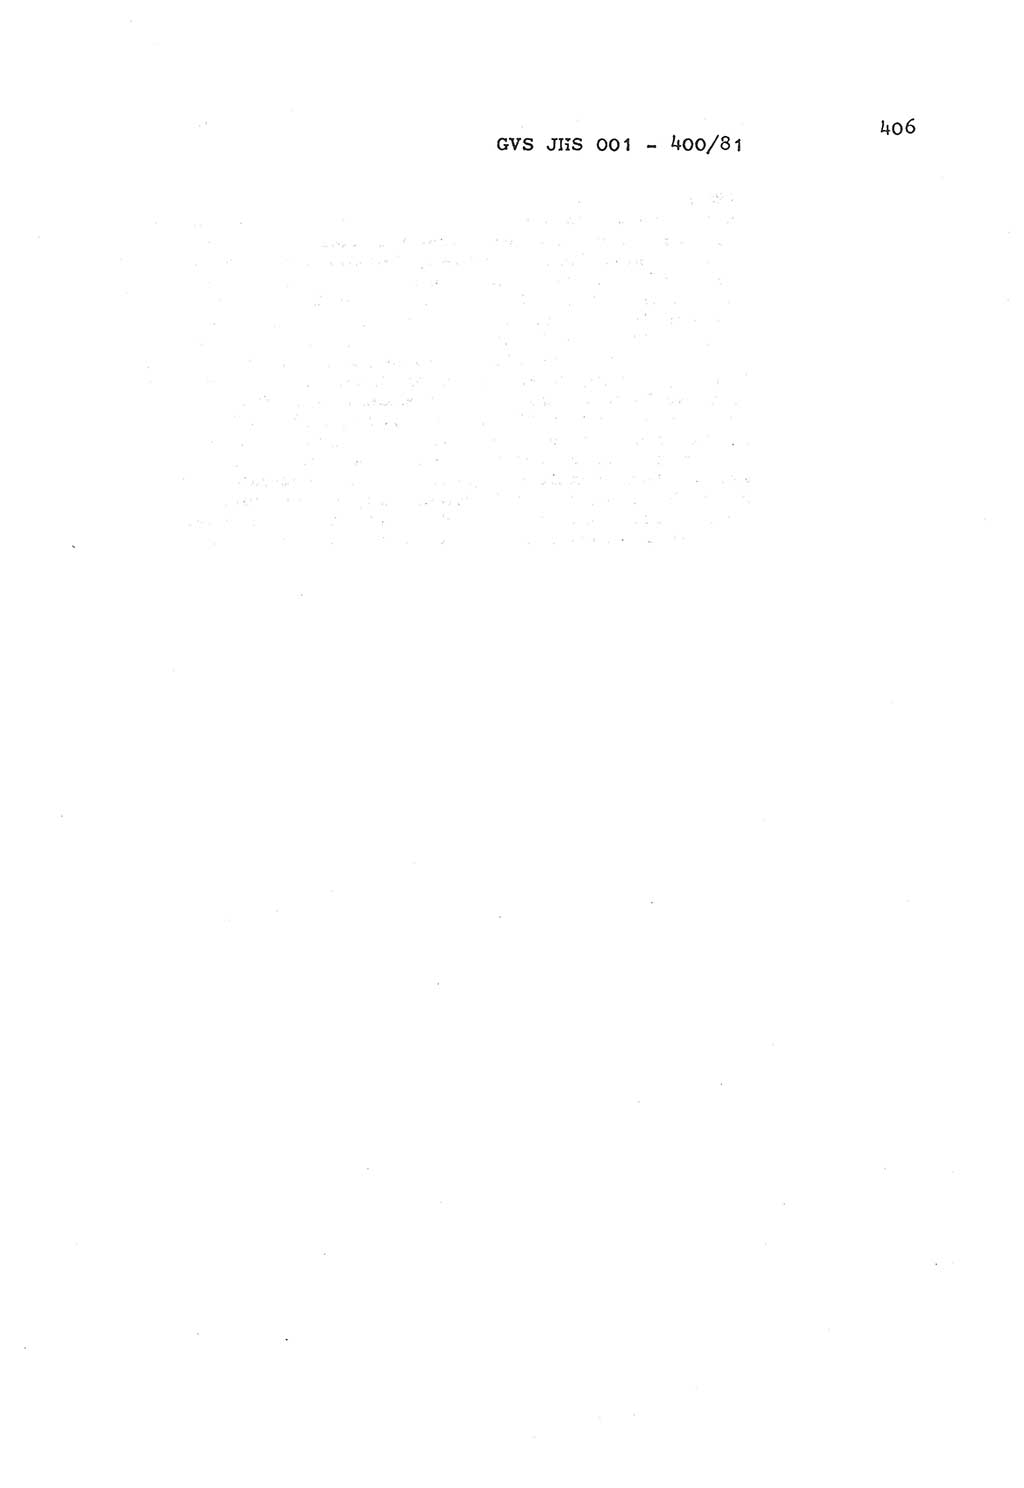 Wörterbuch der politisch-operativen Arbeit, Ministerium für Staatssicherheit (MfS) [Deutsche Demokratische Republik (DDR)], Juristische Hochschule (JHS), Geheime Verschlußsache (GVS) o001-400/81, Potsdam 1985, Blatt 406 (Wb. pol.-op. Arb. MfS DDR JHS GVS o001-400/81 1985, Bl. 406)